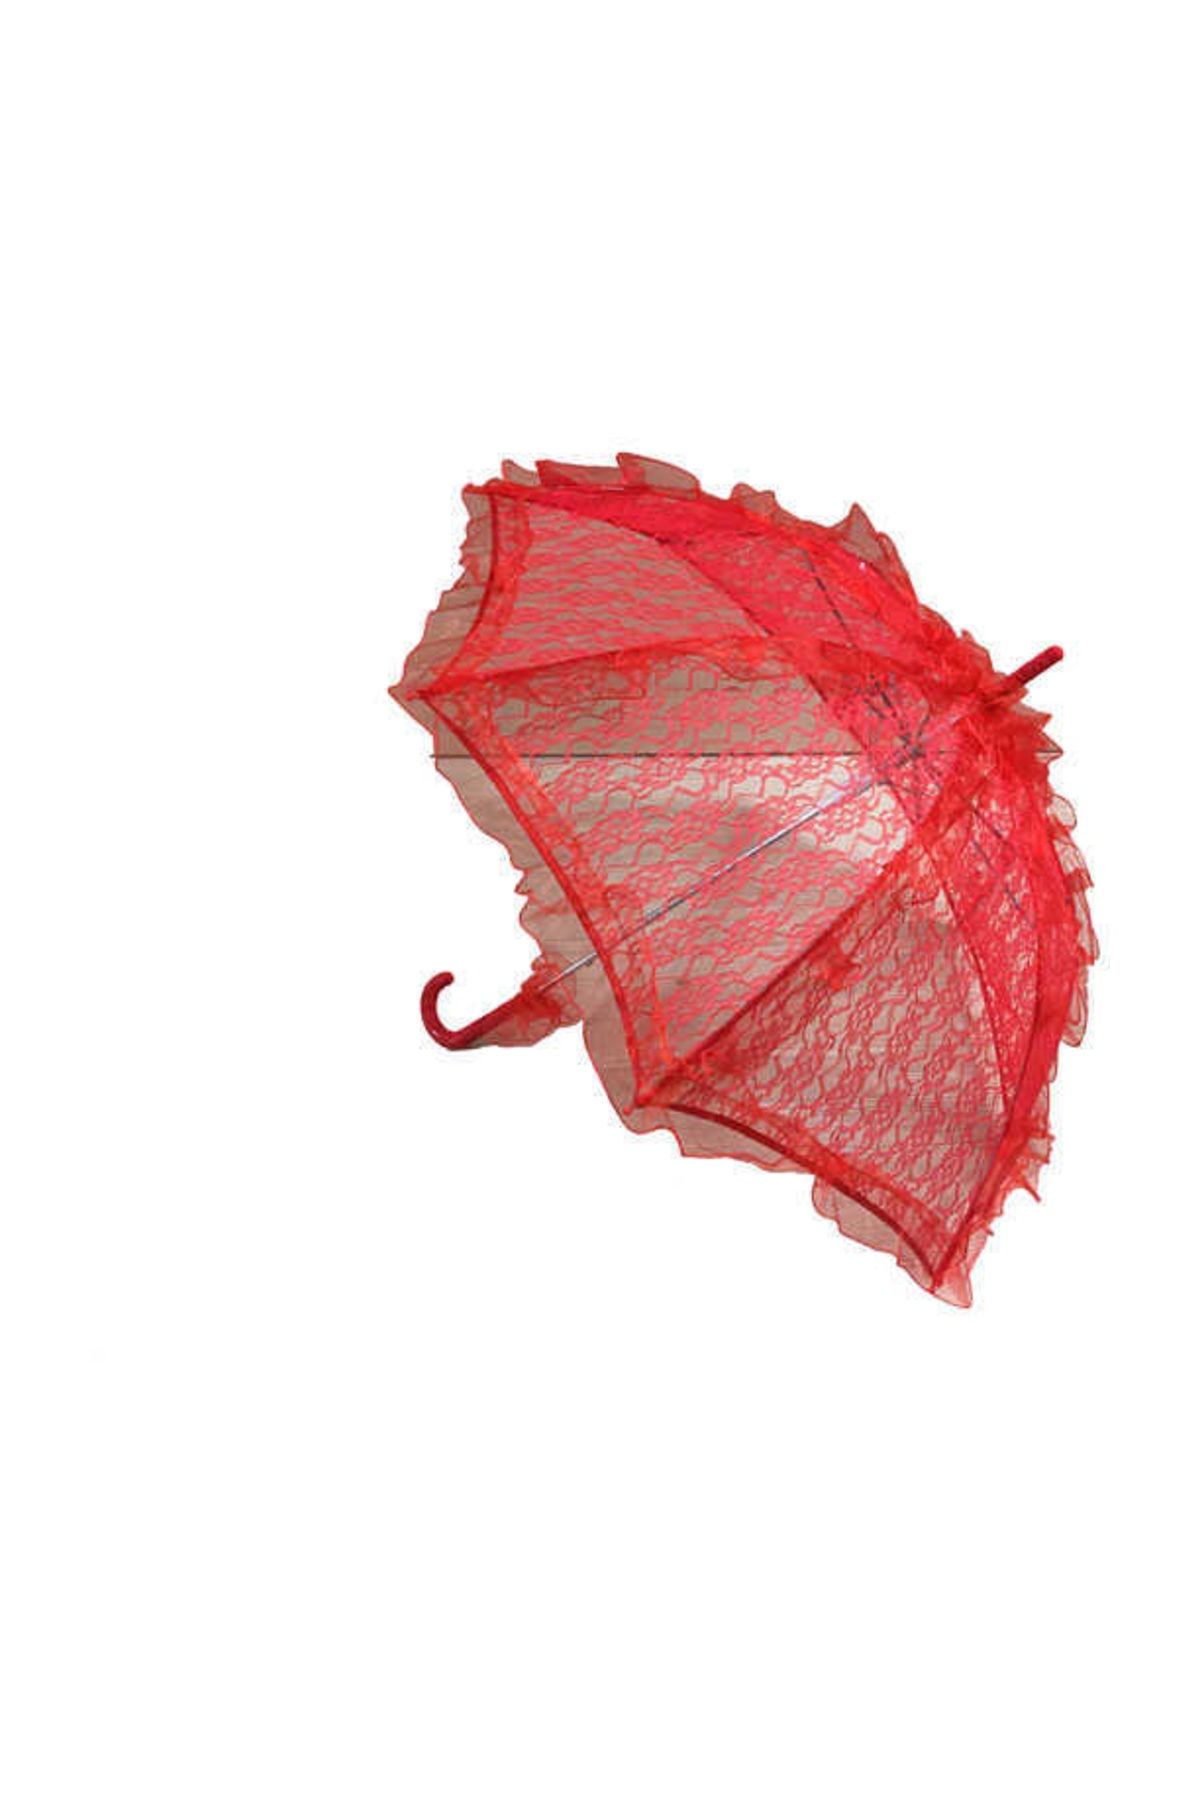 Genel Markalar Dantel Gelin Şemsiyesi Dantelli Şemsiye Kırmızı ( 78 cm * 75 cm )